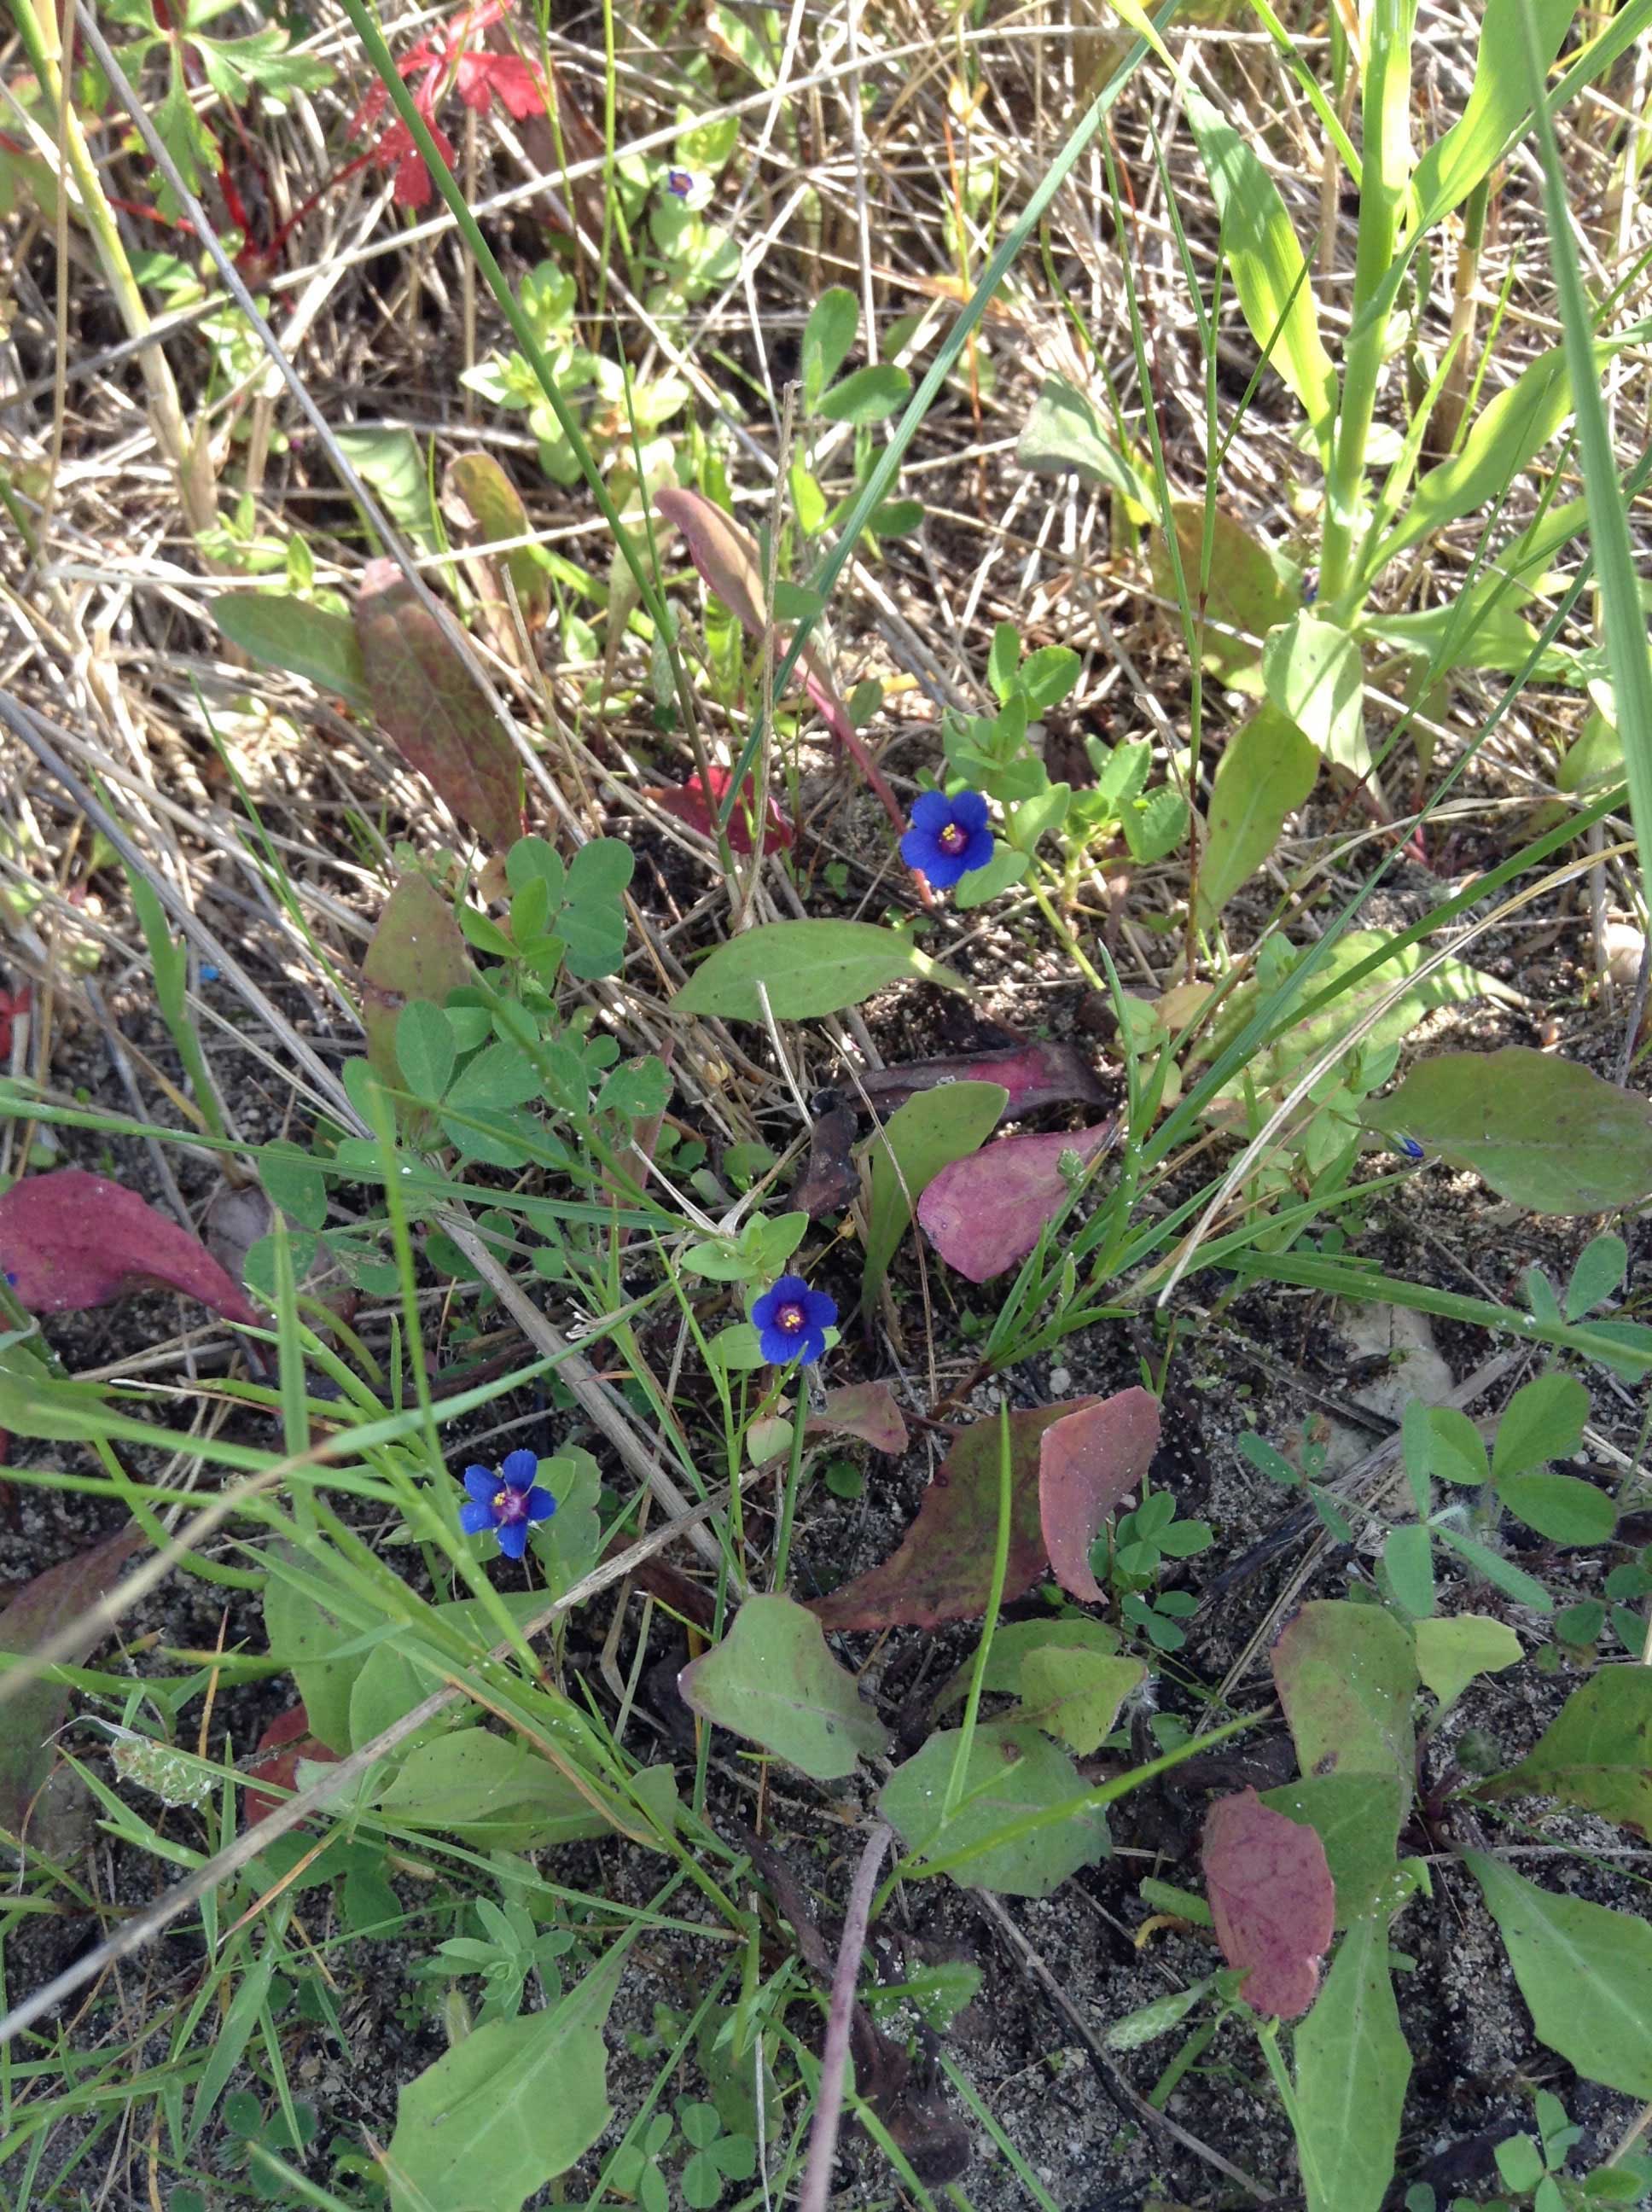 Blue wild flower